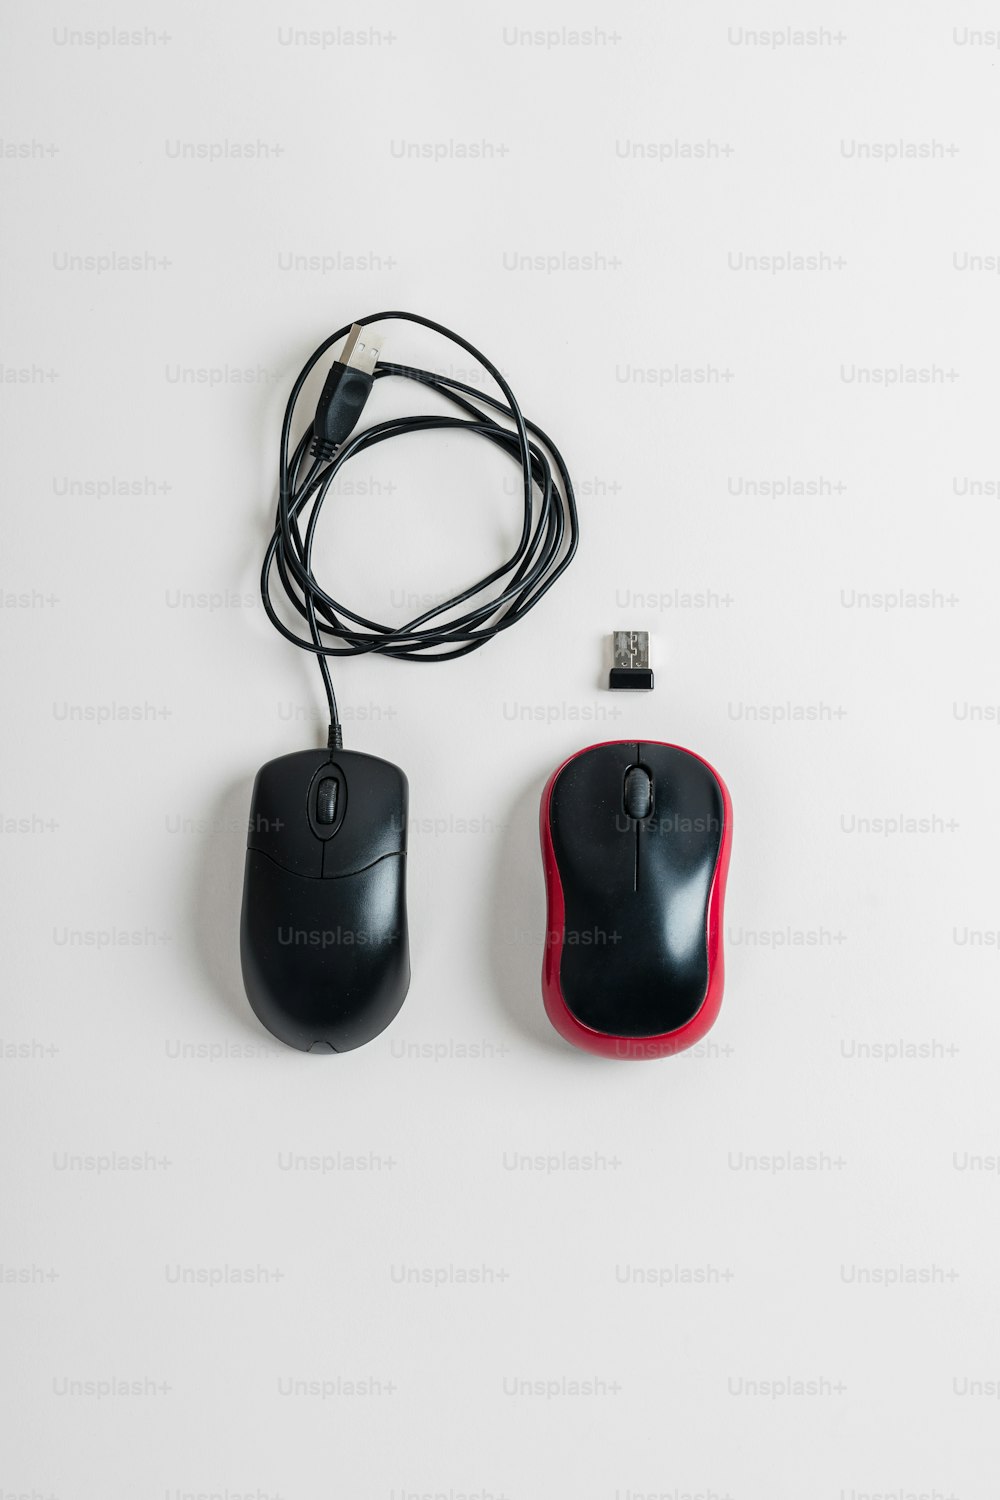 Eine schwarz-rote Computermaus neben einer USB-Maus